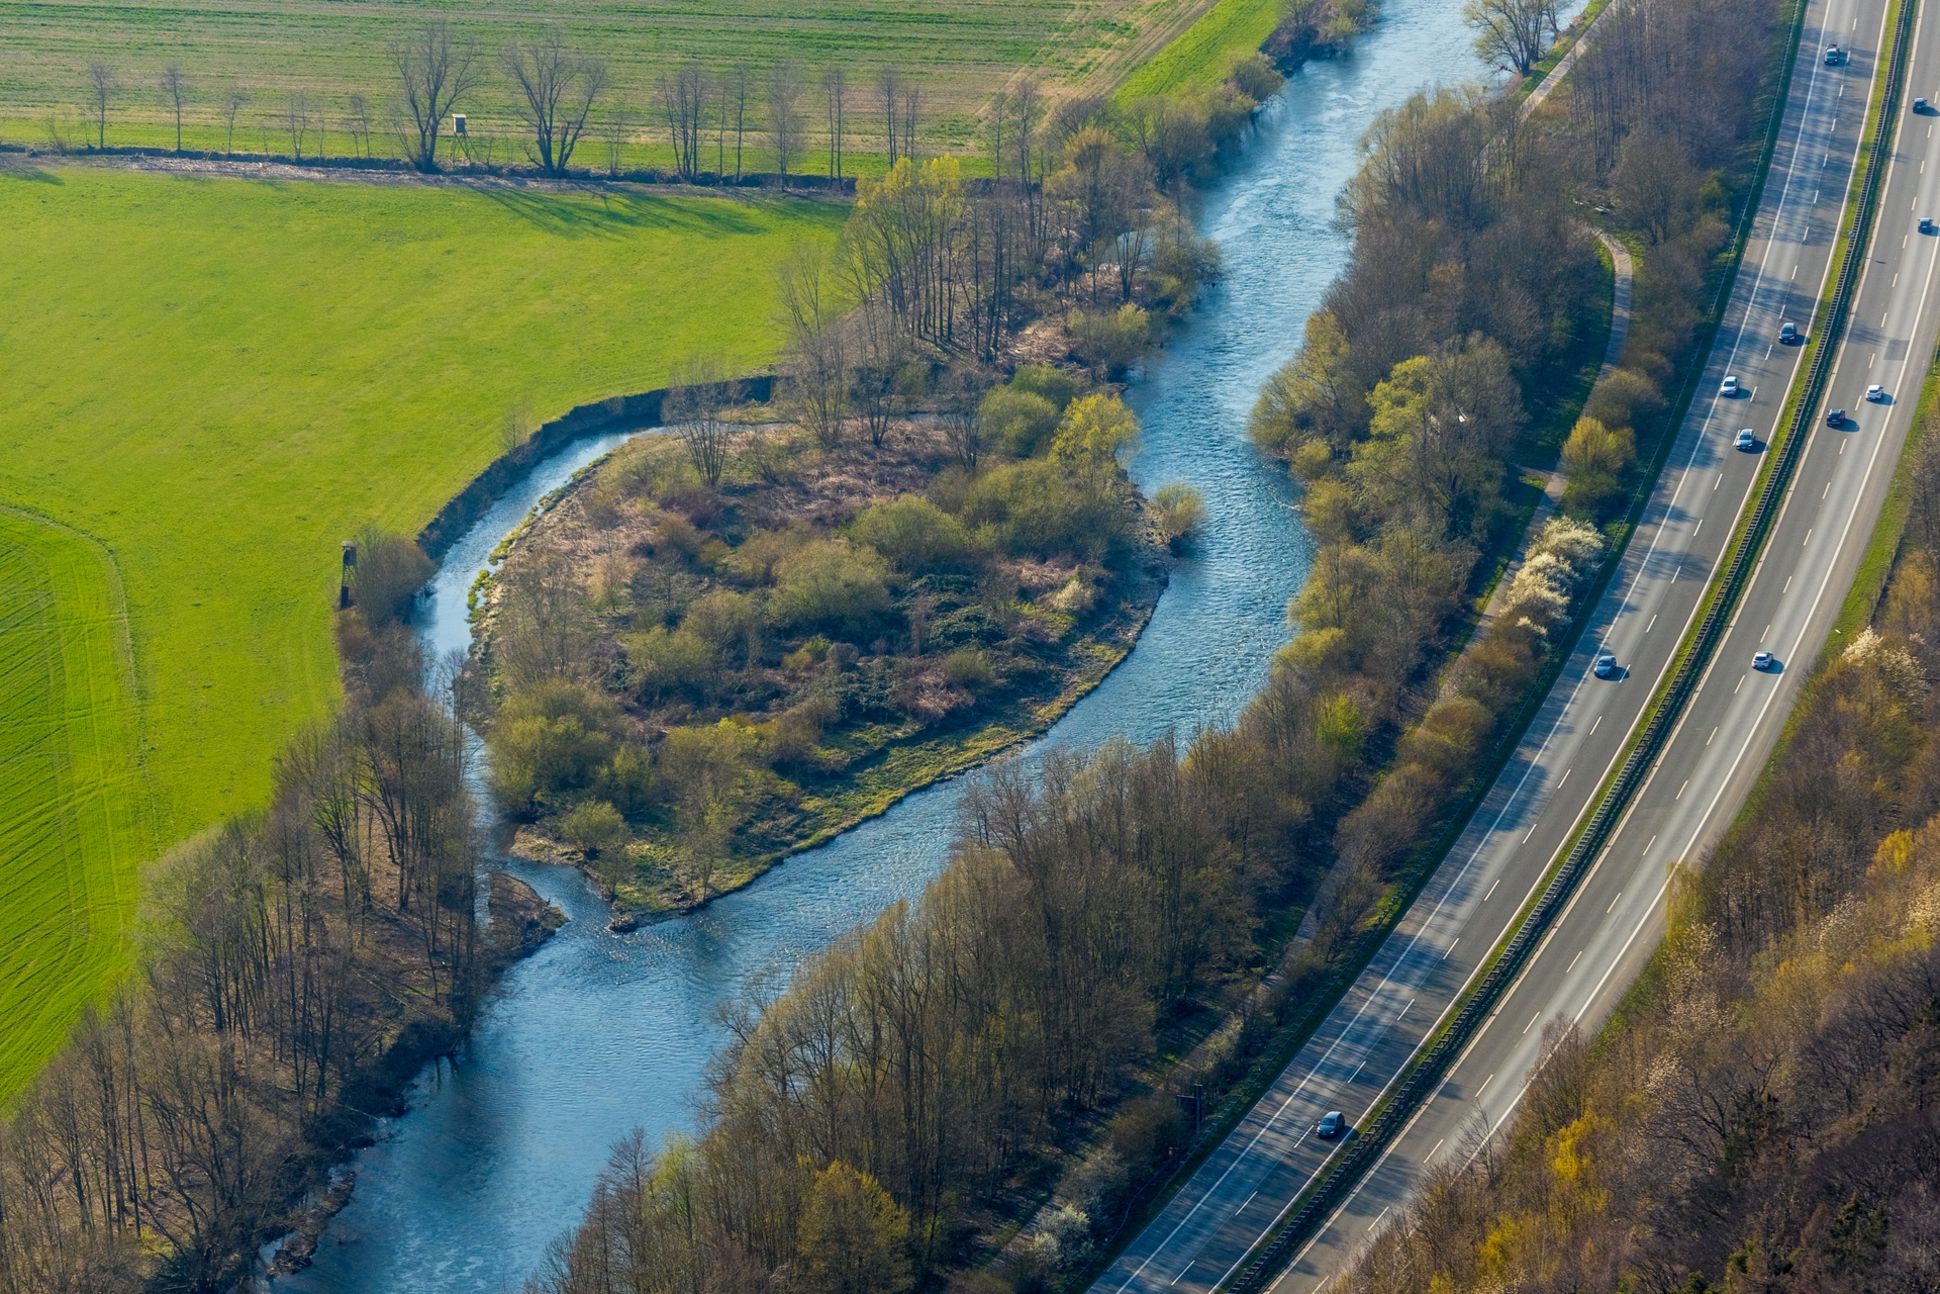 Luftbild von der Ruhrinsel Neheim an der Autobahn A46 Nähe Bachumer Bach in Arnsberg im Sauerland in Nordrhein-Westfalen, Deutschland. Die Ruhr ist hier renaturiert.